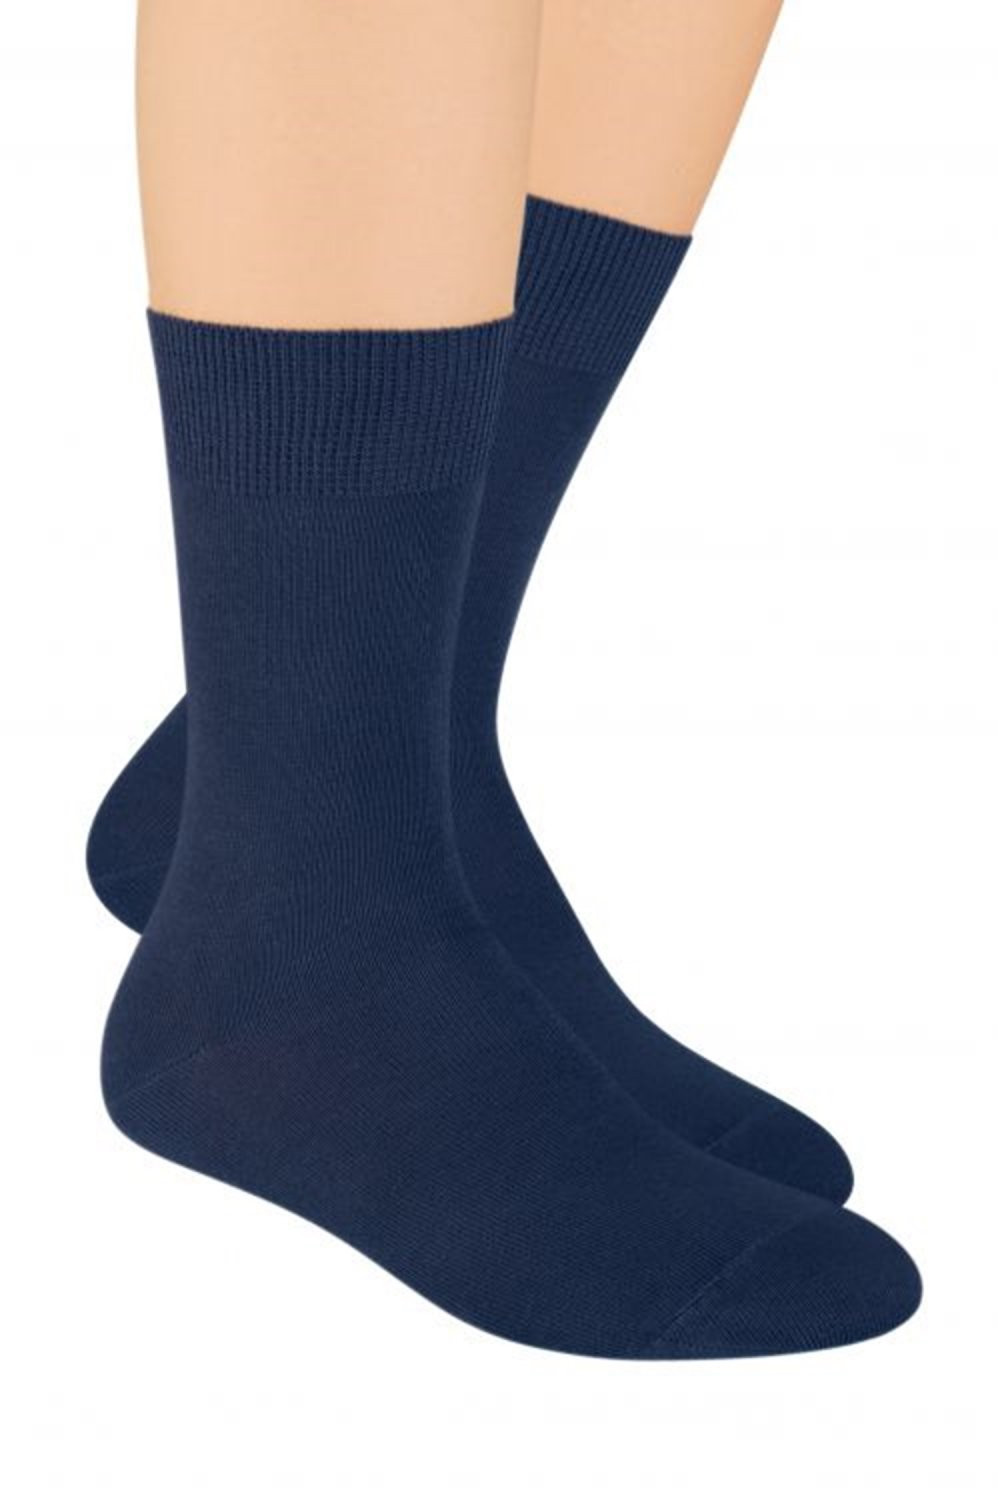 Pánské ponožky 048 dark blue - Steven tmavě modrá 44/46